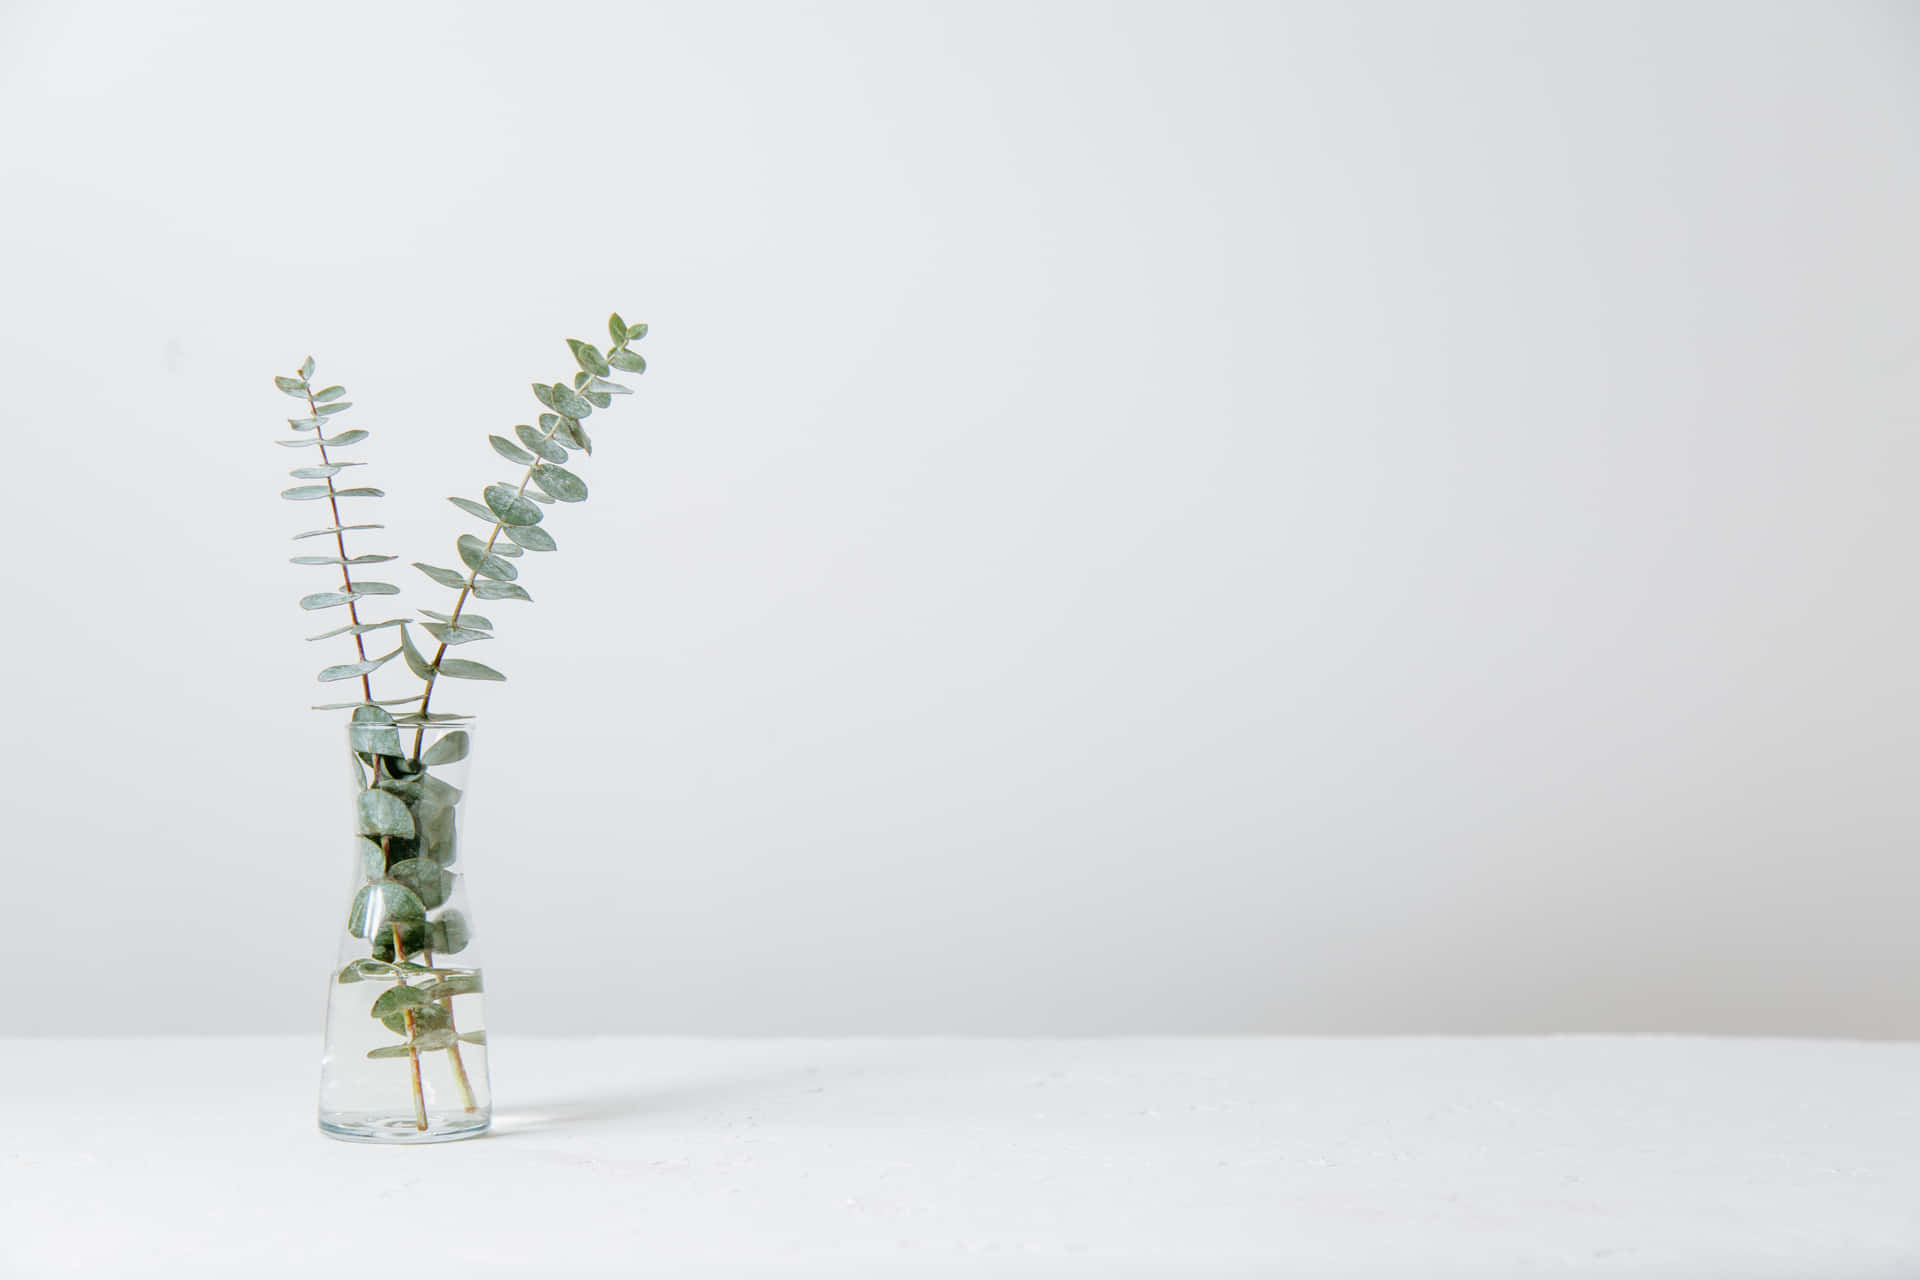 White Image Background Vase Plants